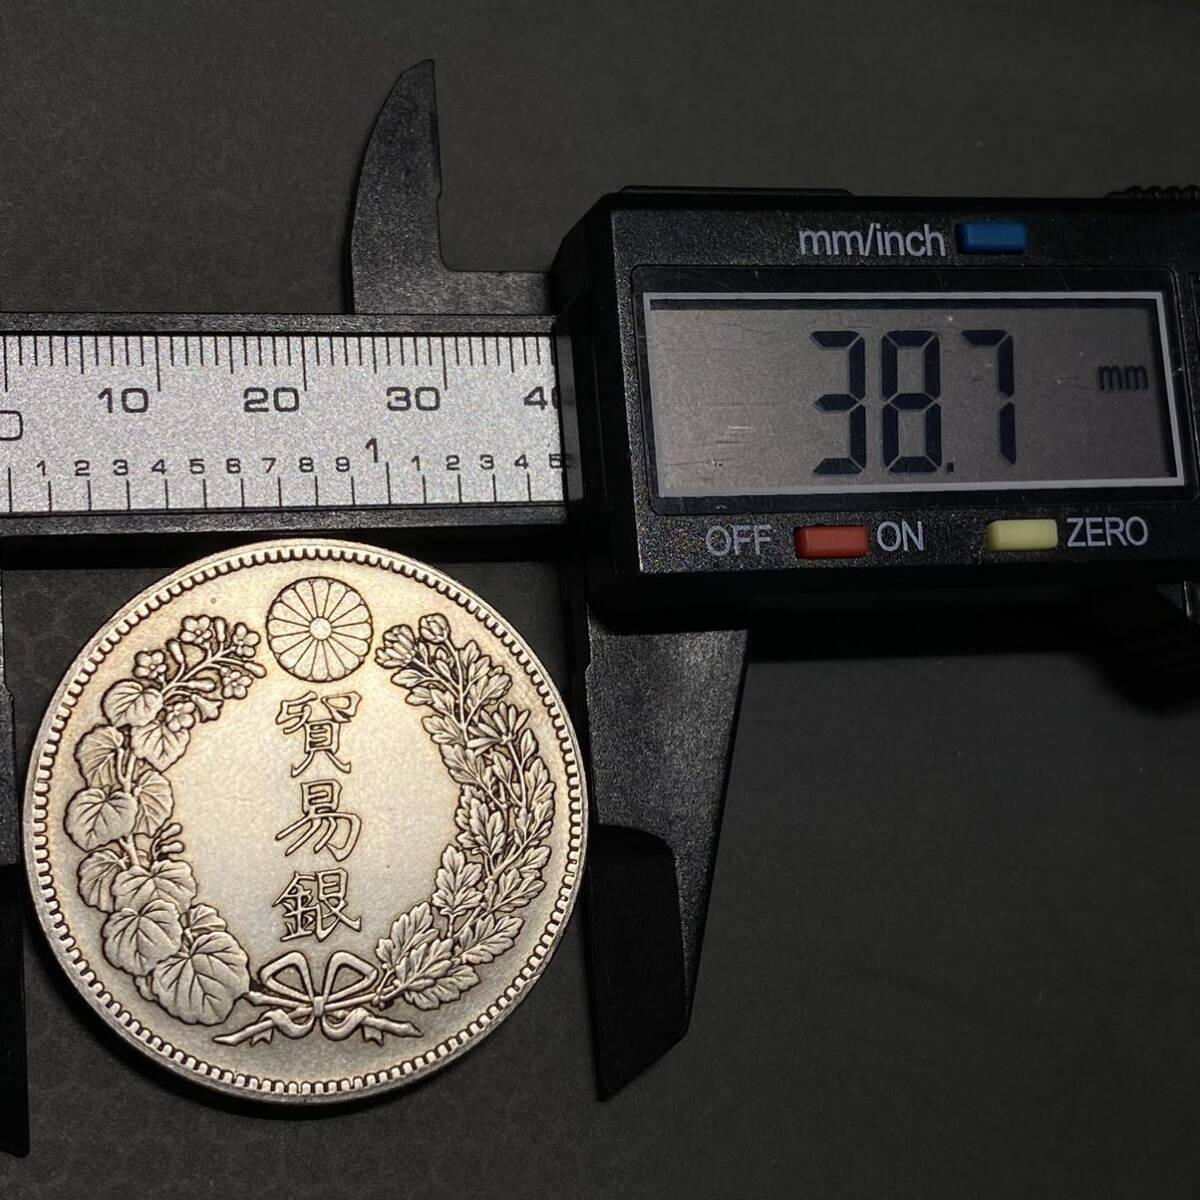 日本 古銭 貿易銀 銀貨 明治8年 約26.49g 一円貨幣 硬貨骨董品コインの画像6